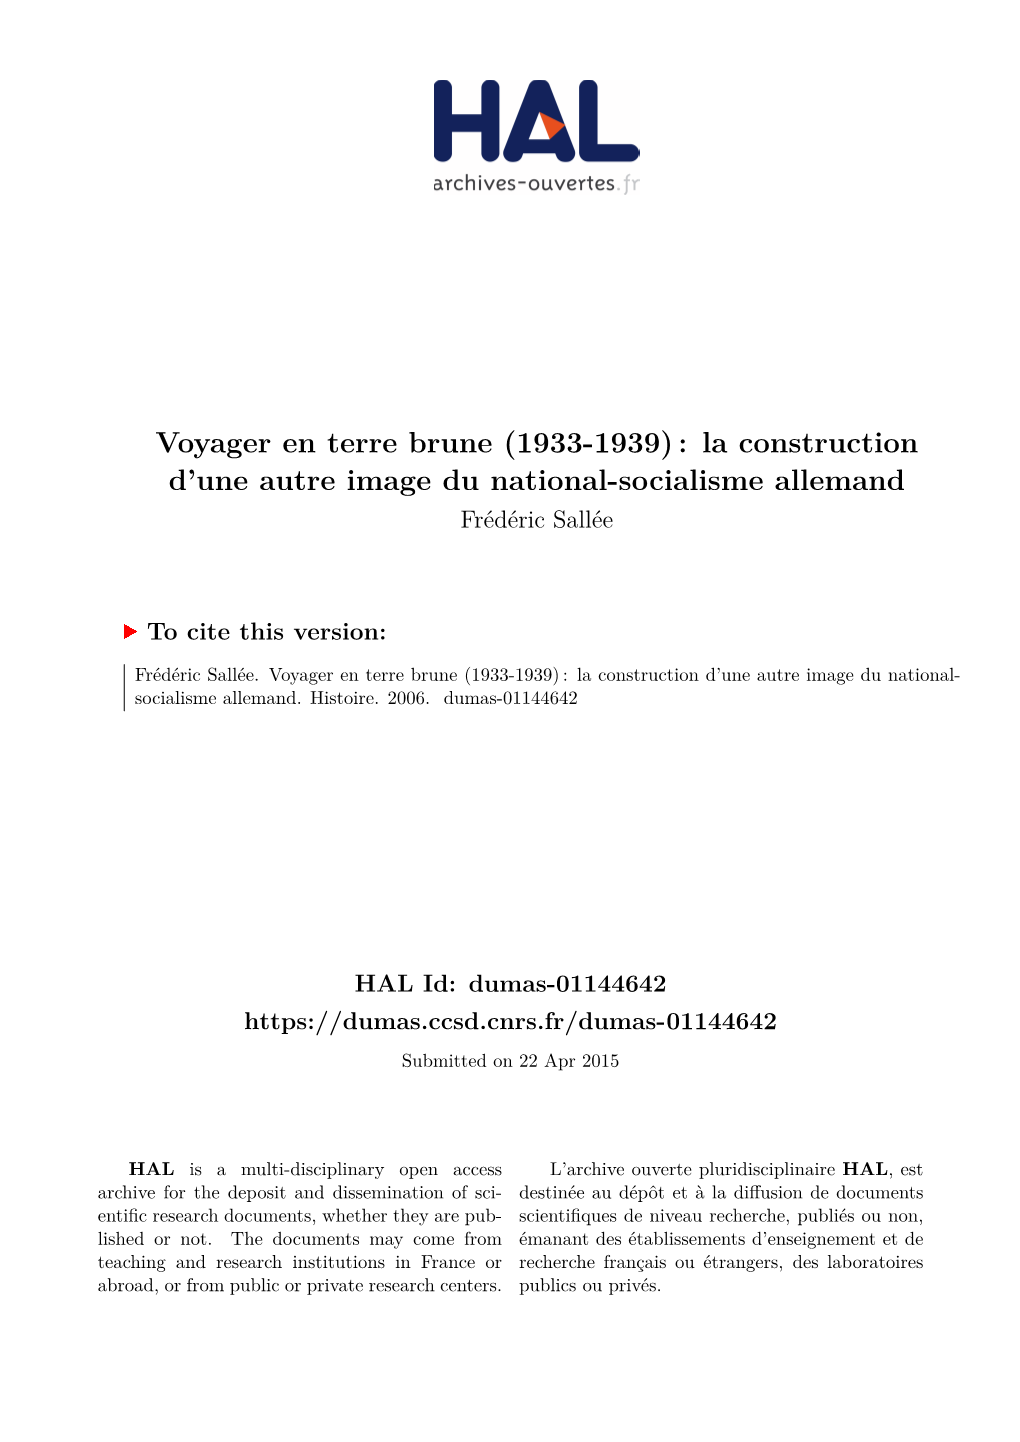 Voyager En Terre Brune (1933-1939) : La Construction D’Une Autre Image Du National-Socialisme Allemand Frédéric Sallée